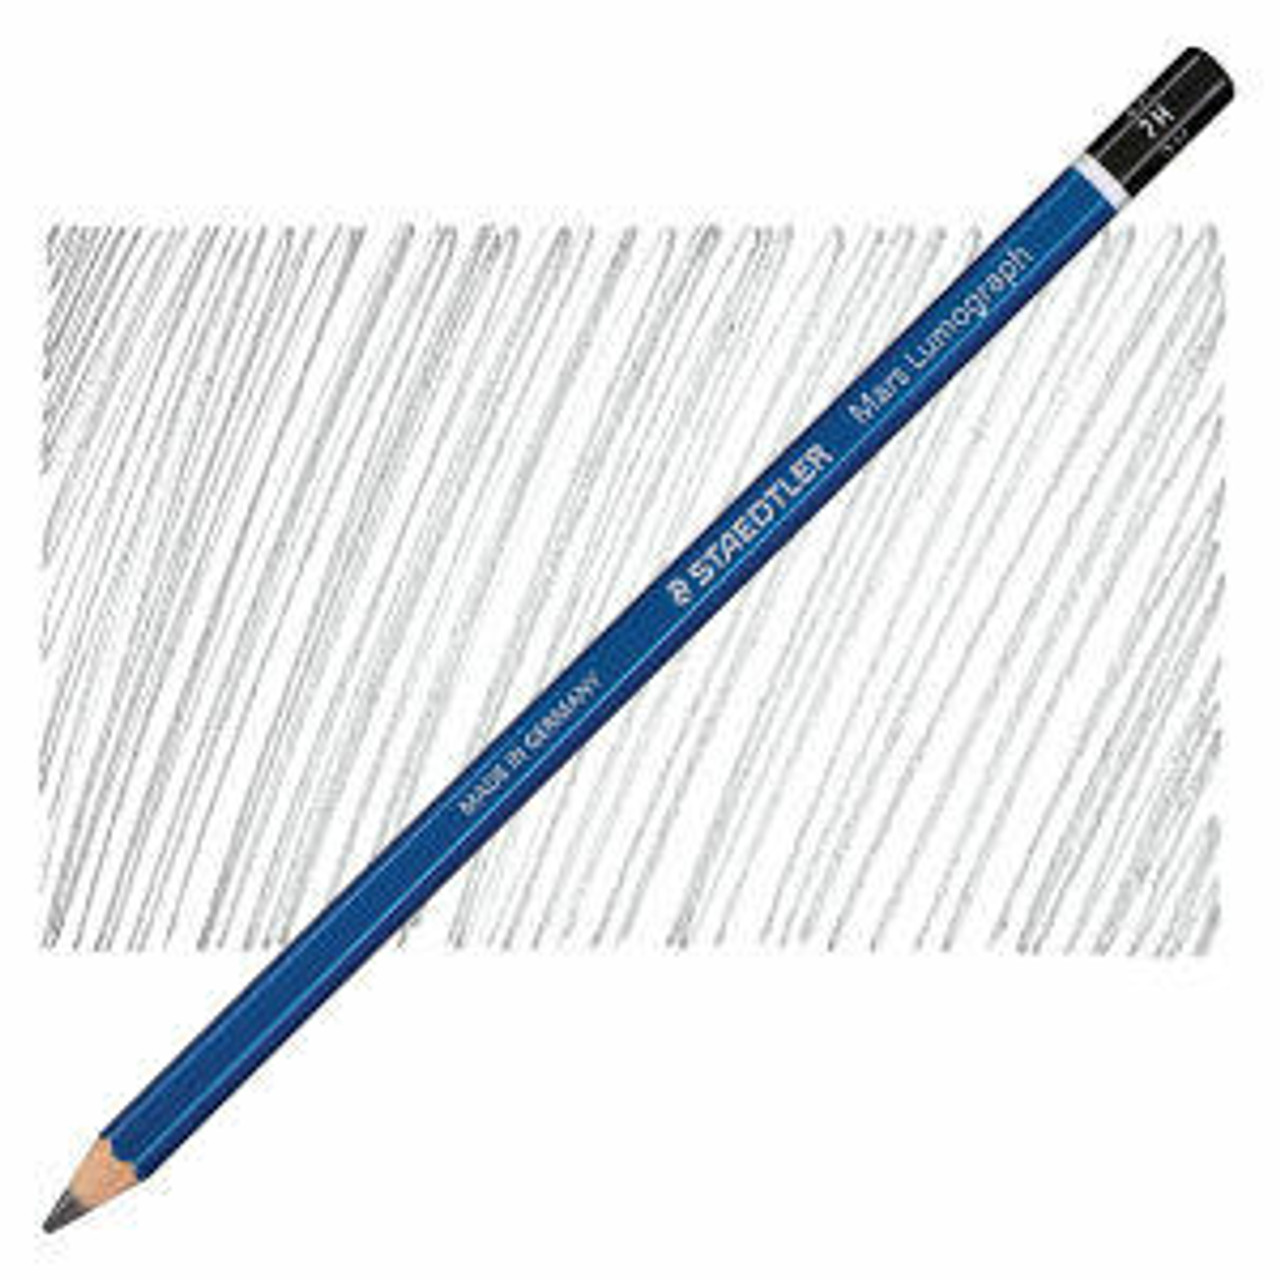 2x Staedtler Lumograph Drawing Pencil Set 100% PEFC - 2H, HB, B